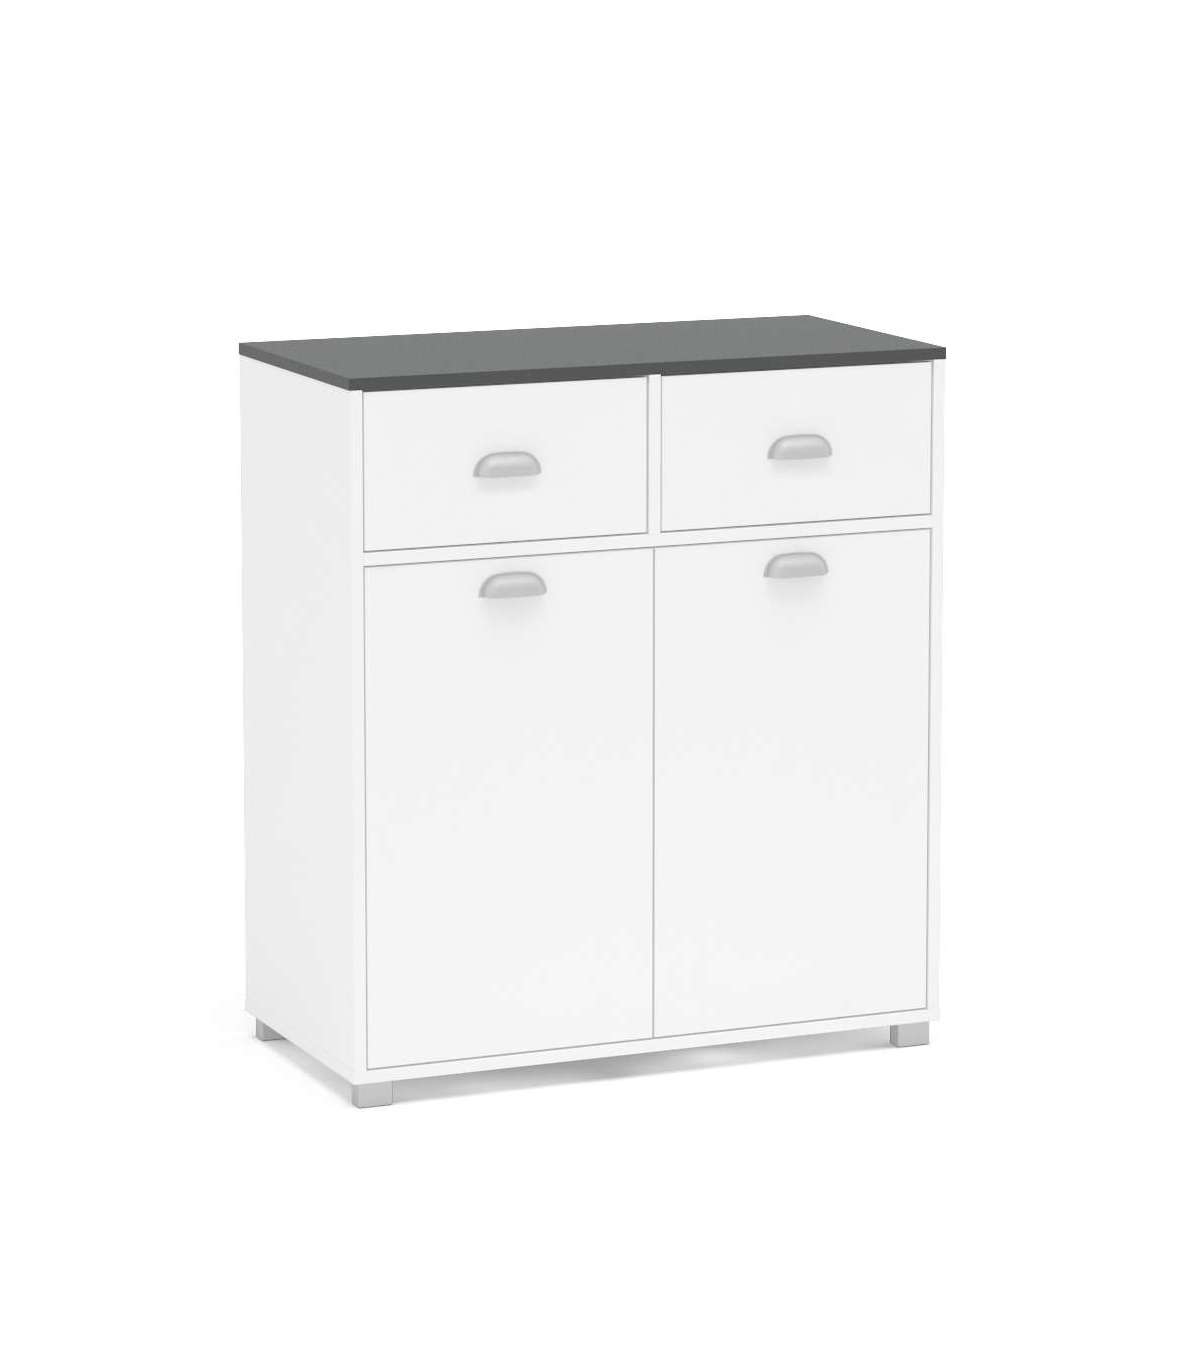 Mueble bajo BASIC blanco 1 puerta + 1 cajón fabricado en aglomerado 40 x 70  cm